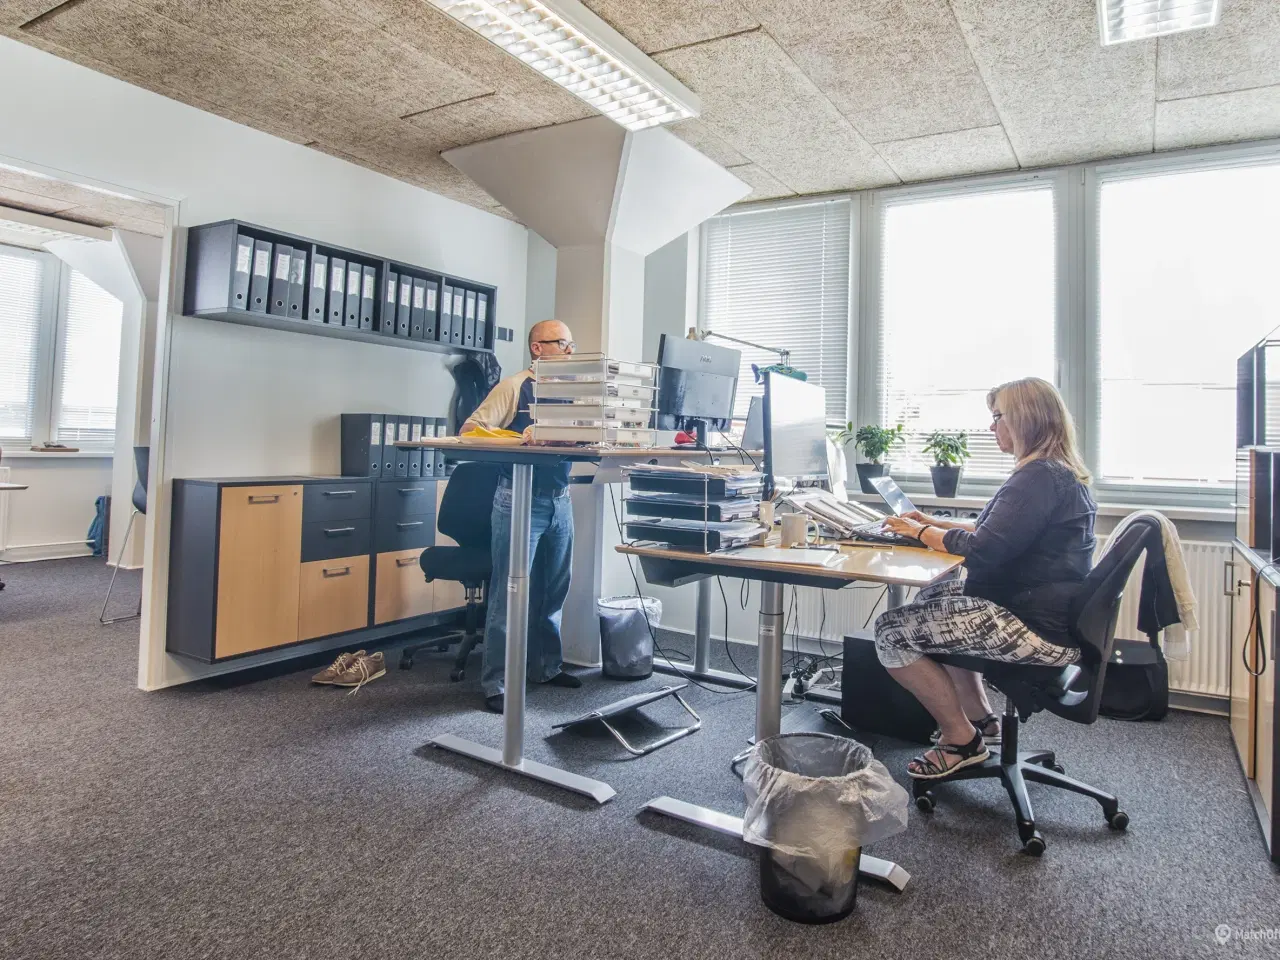 Billede 16 - Indus21 - Eget kontor i Roskildes største kontorfællesskab?